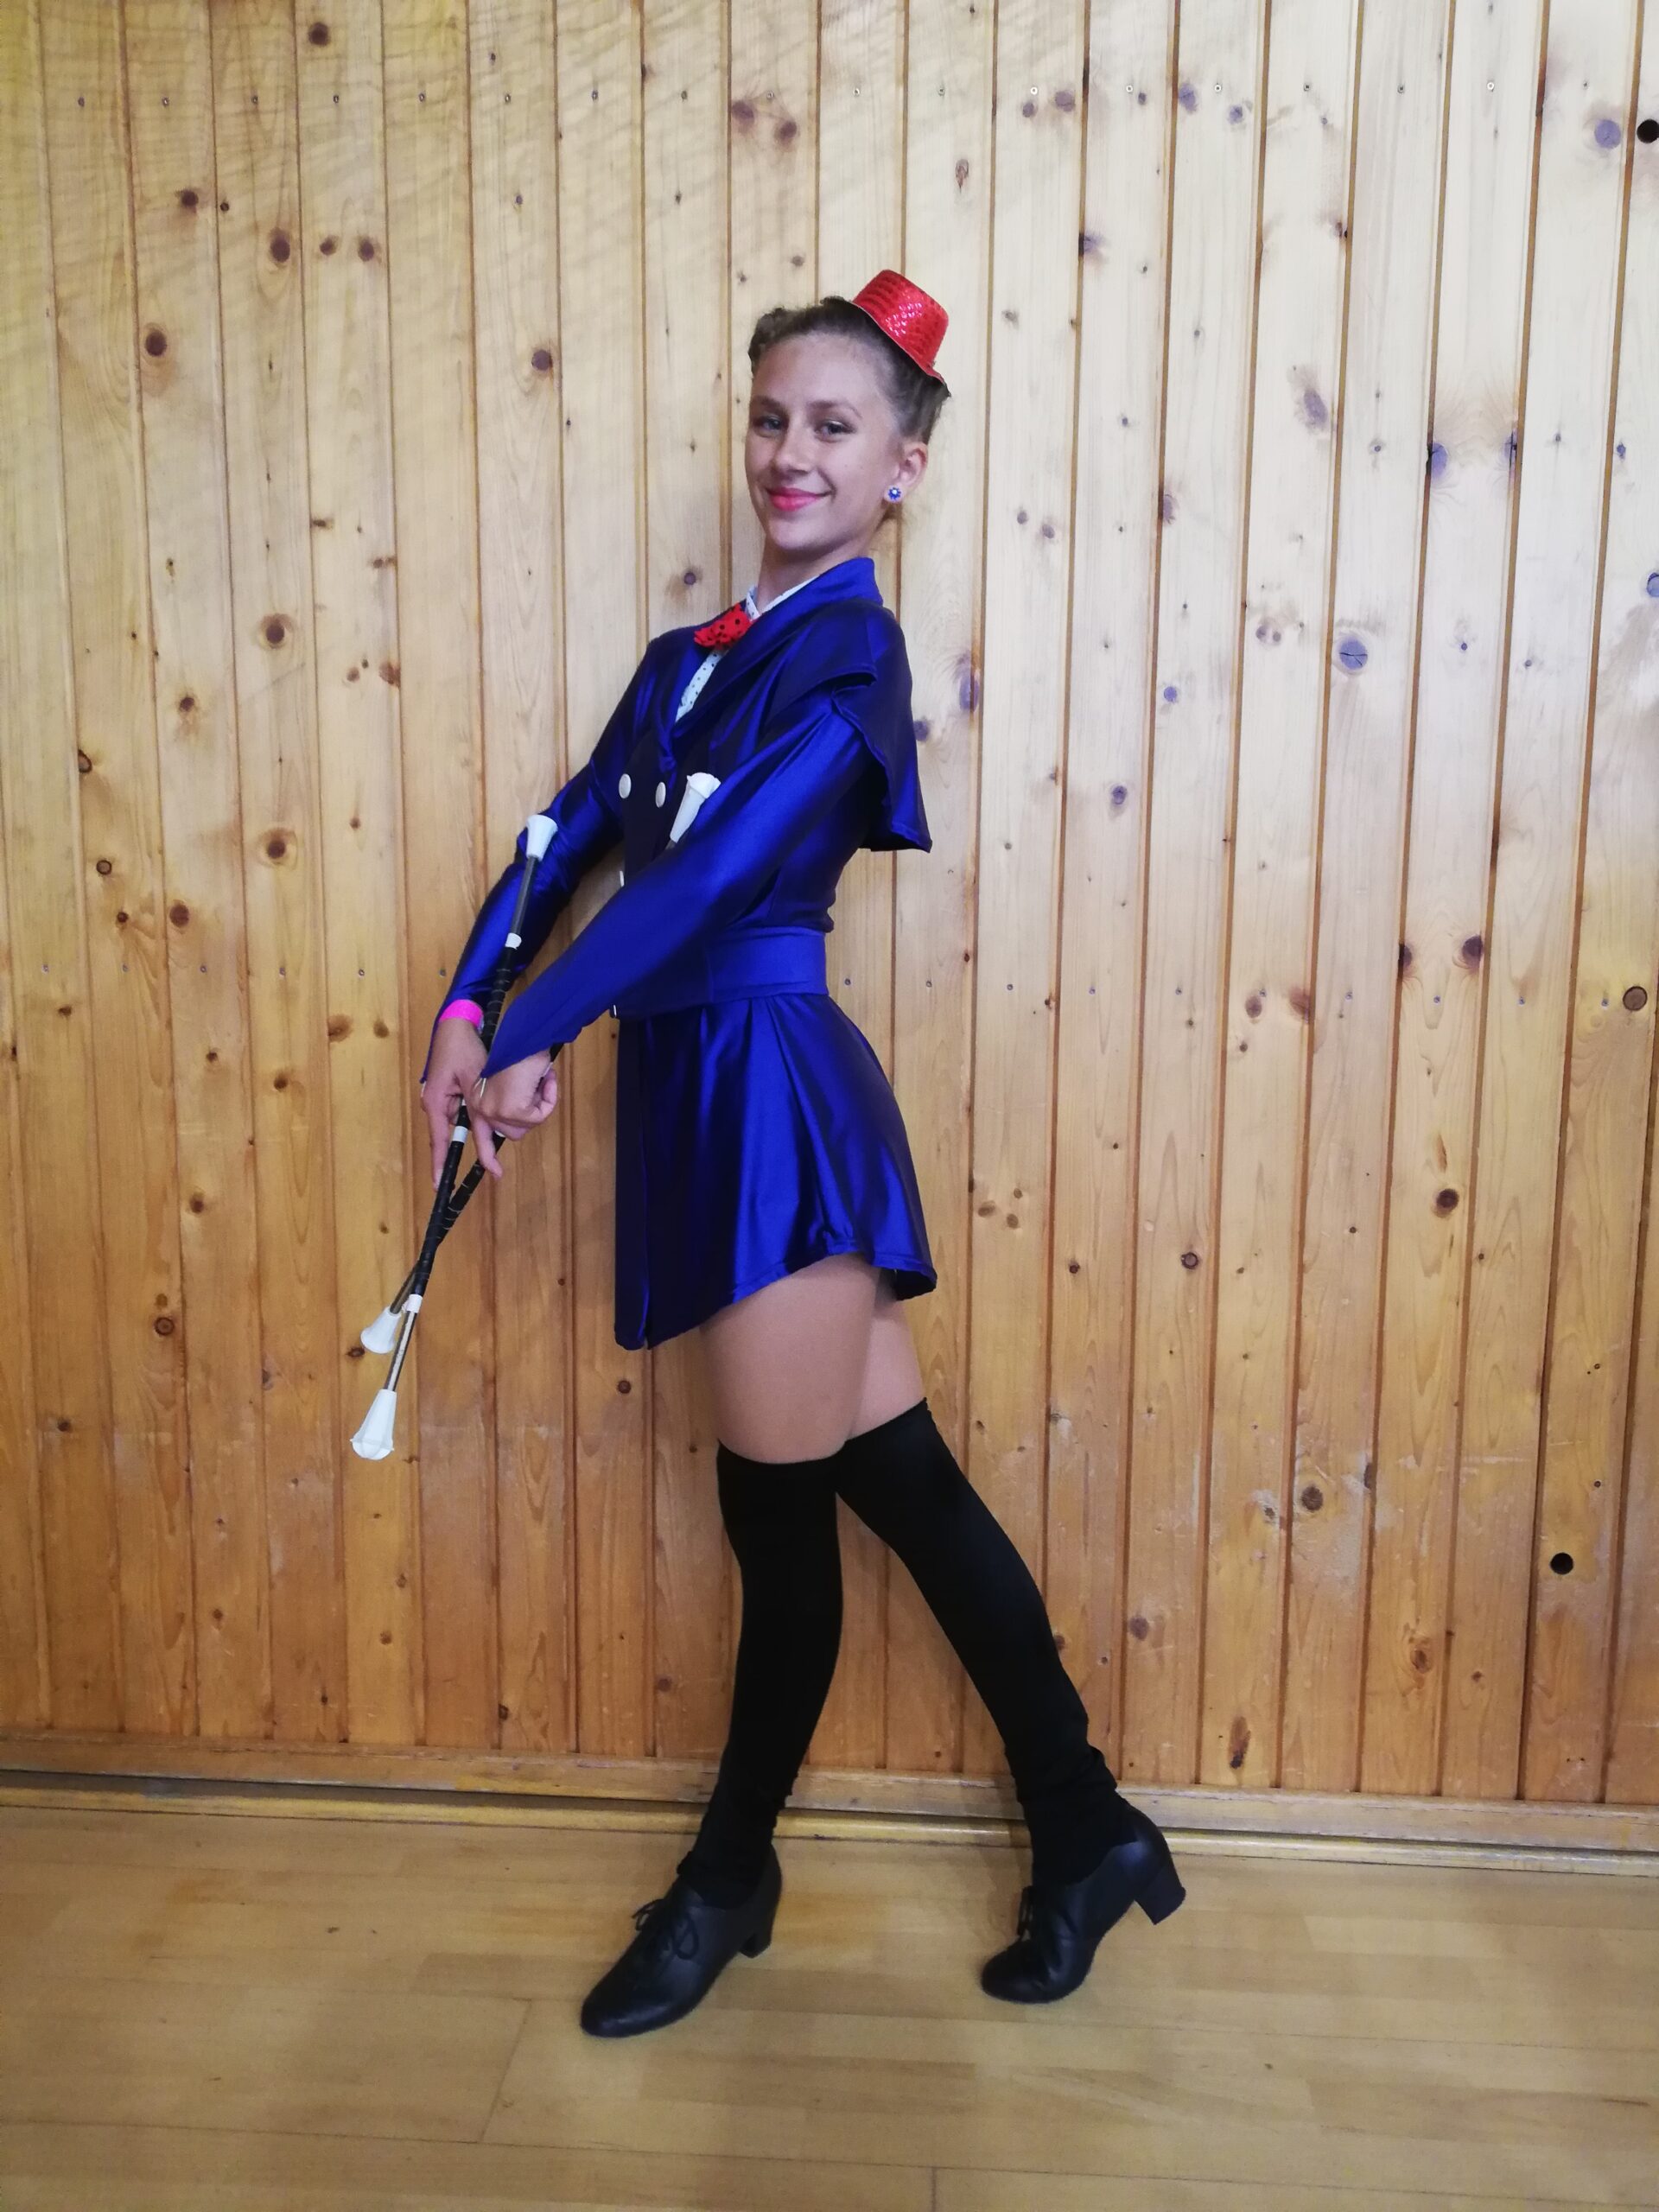 KATEŘINA DOSTÁLOVÁ ”Mary Poppins” 2 Baton Junior Solo – 1. místo celostátní výsledky